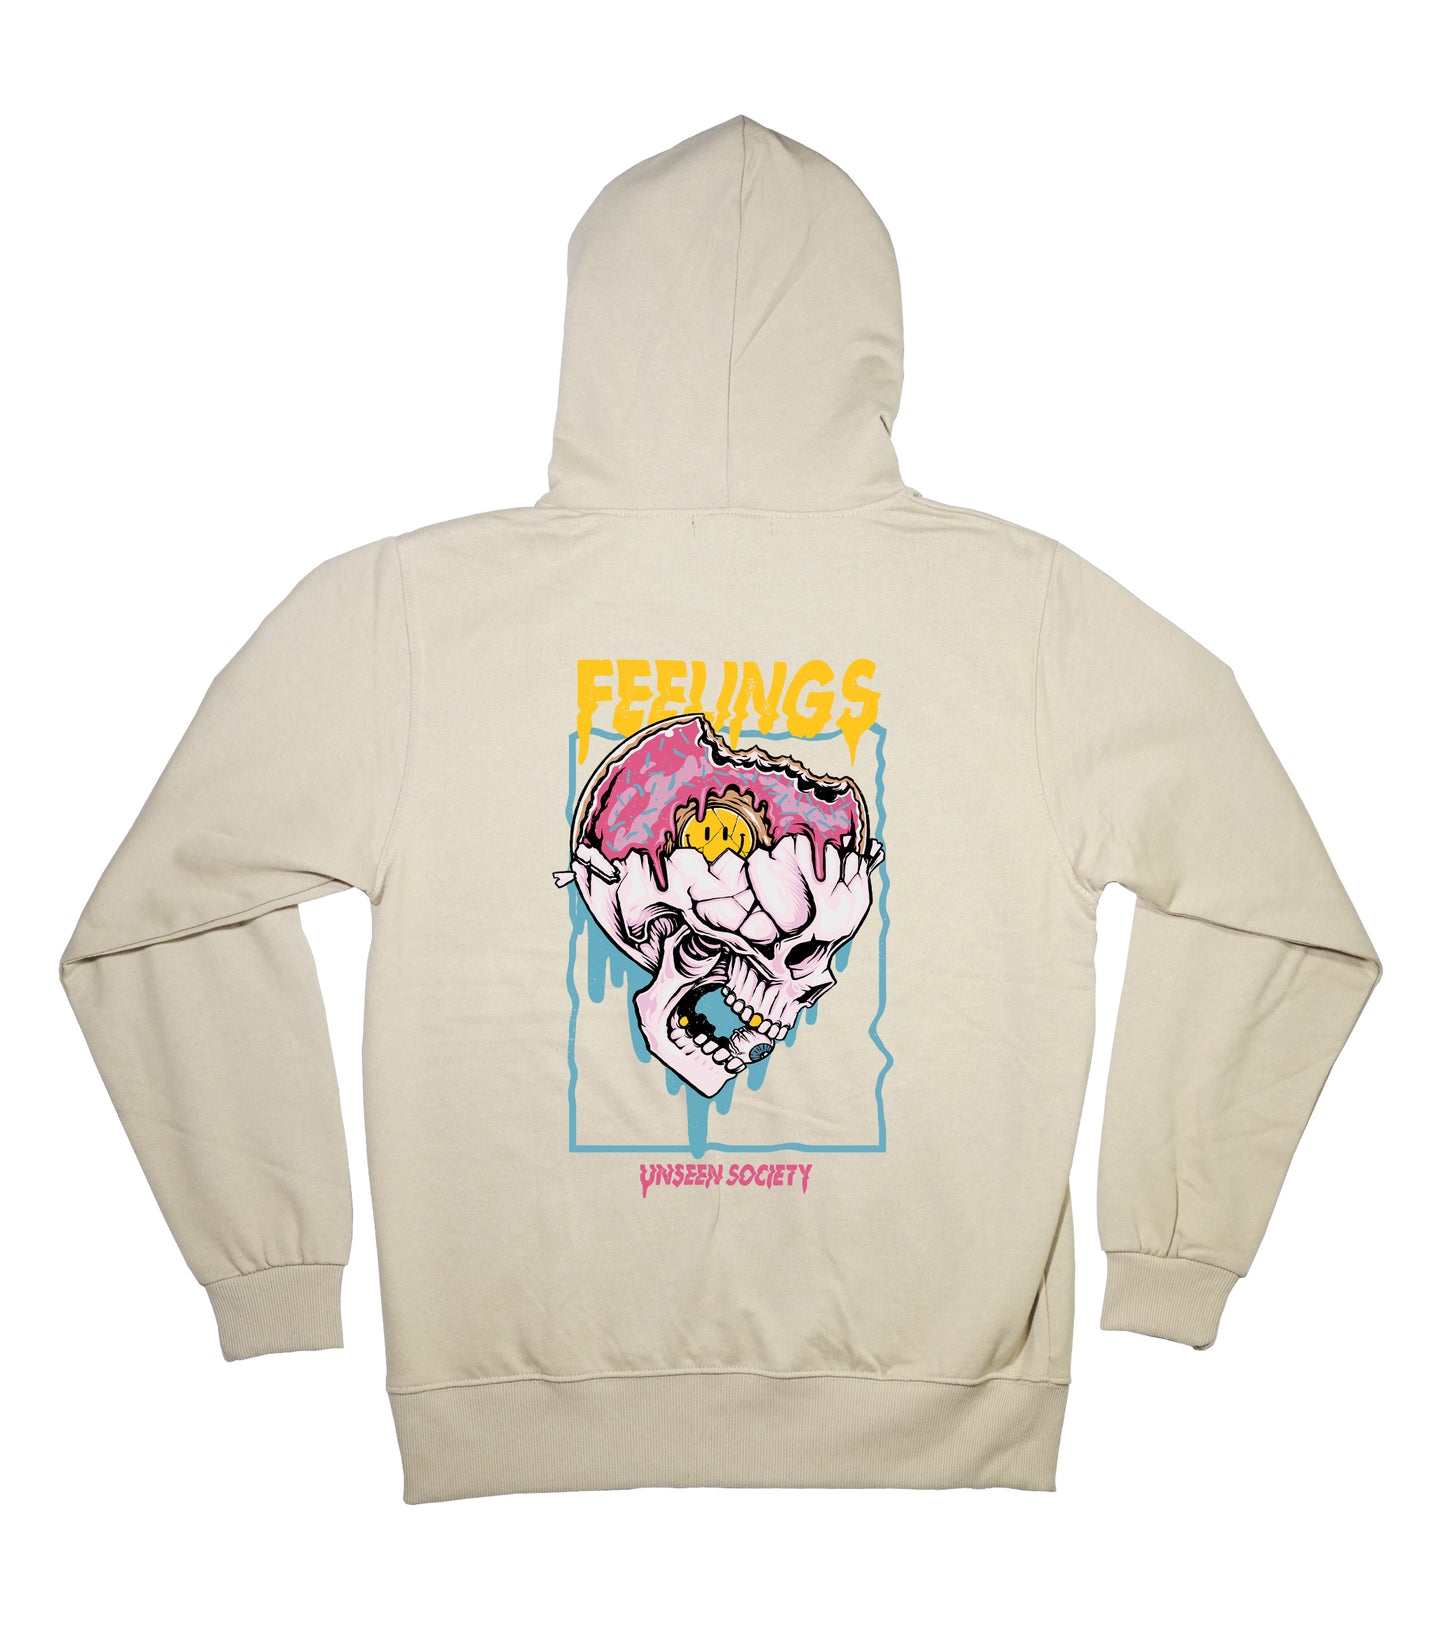 Feelings hoodie